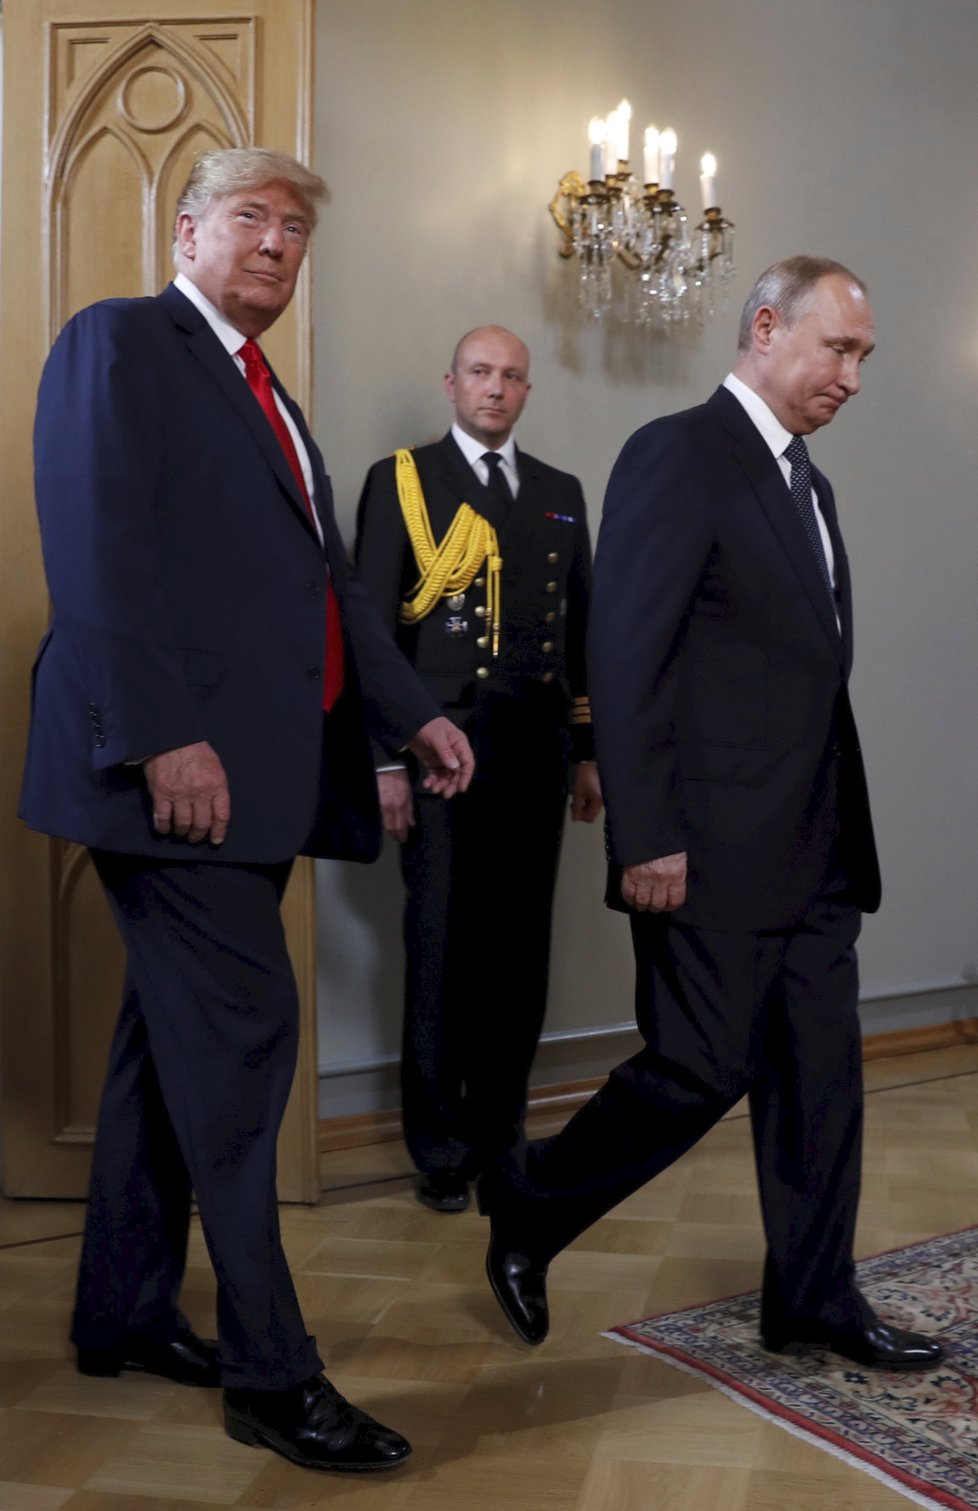 Rusko-americký summit mezi Trumpem a Putinem byl zahájen.